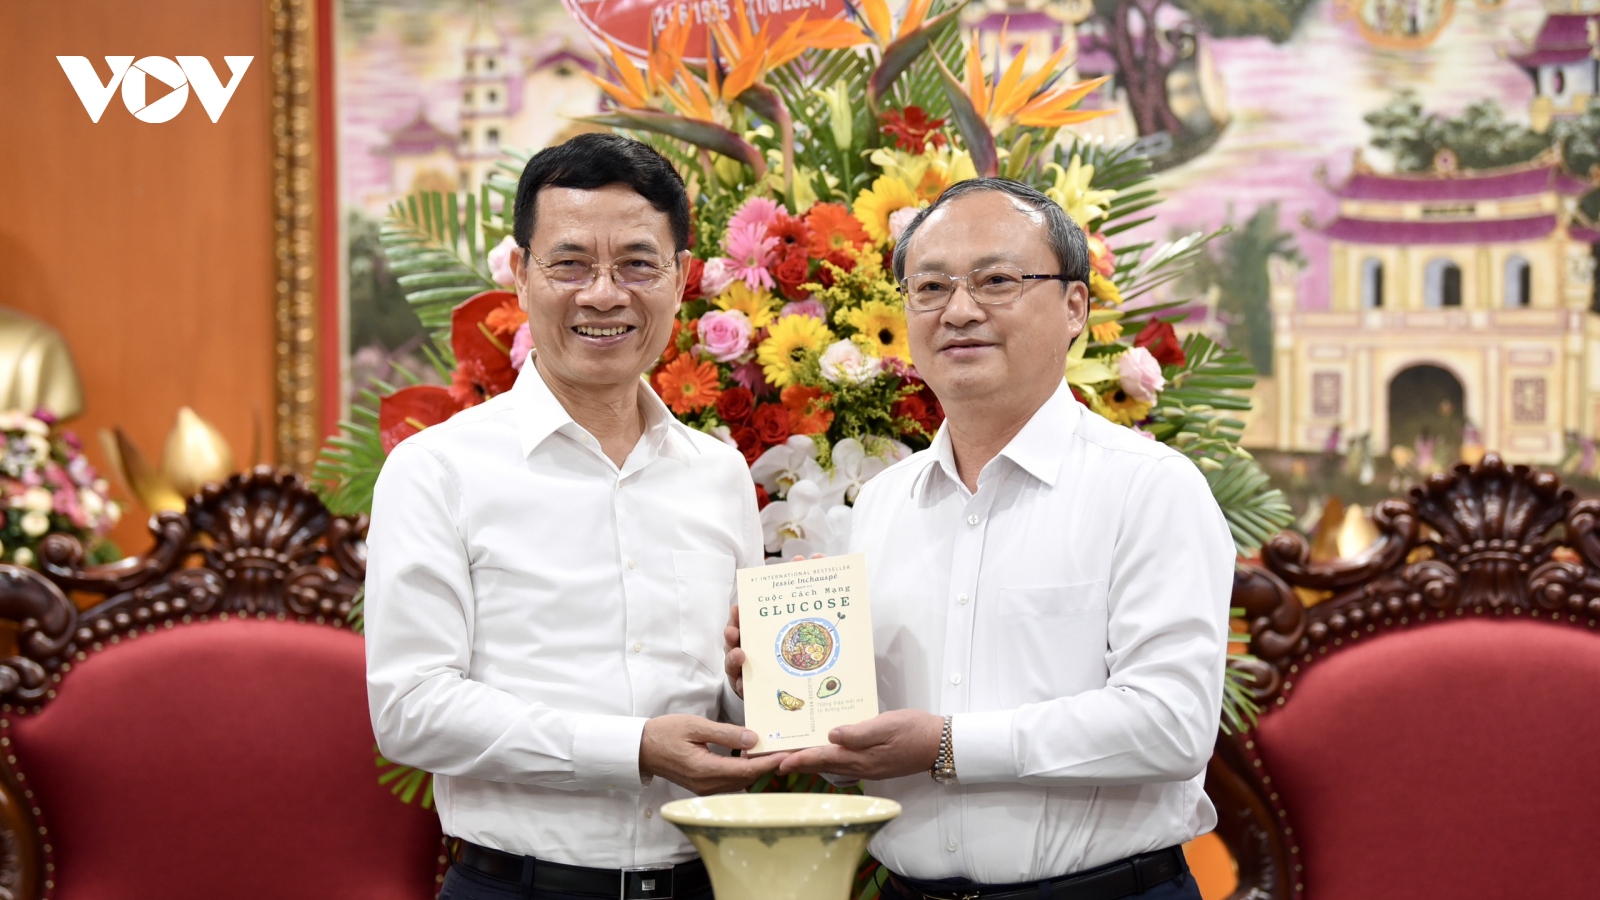 Bộ trưởng Nguyễn Mạnh Hùng và lãnh đạo nhiều bộ, ngành thăm và chúc mừng VOV